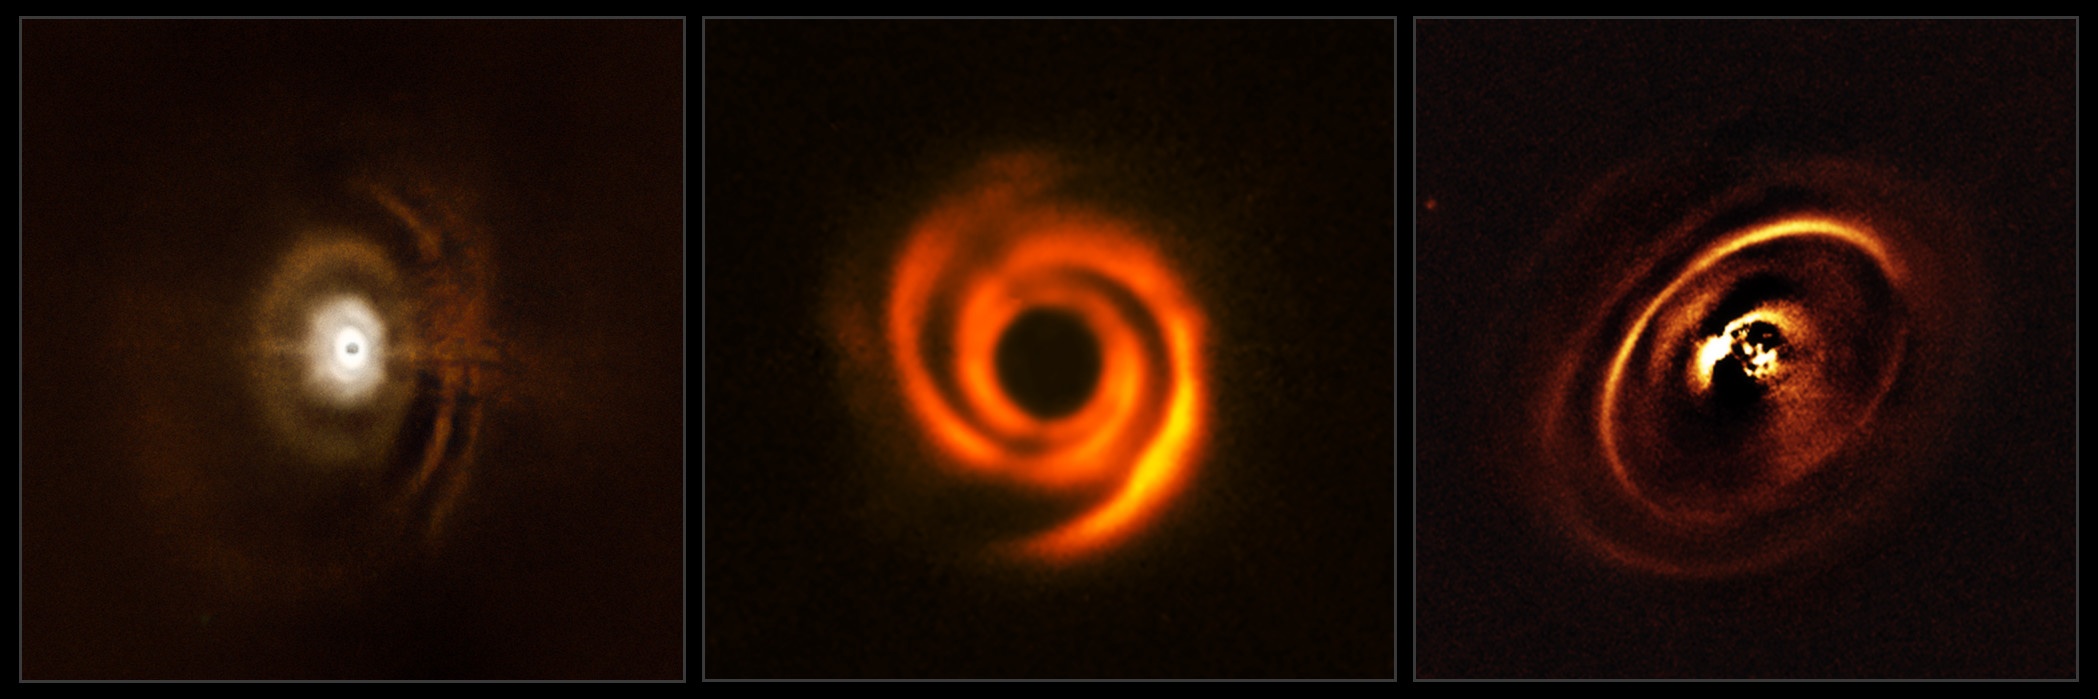 Un planeta formó brazos espirales alrededor de una estrella joven